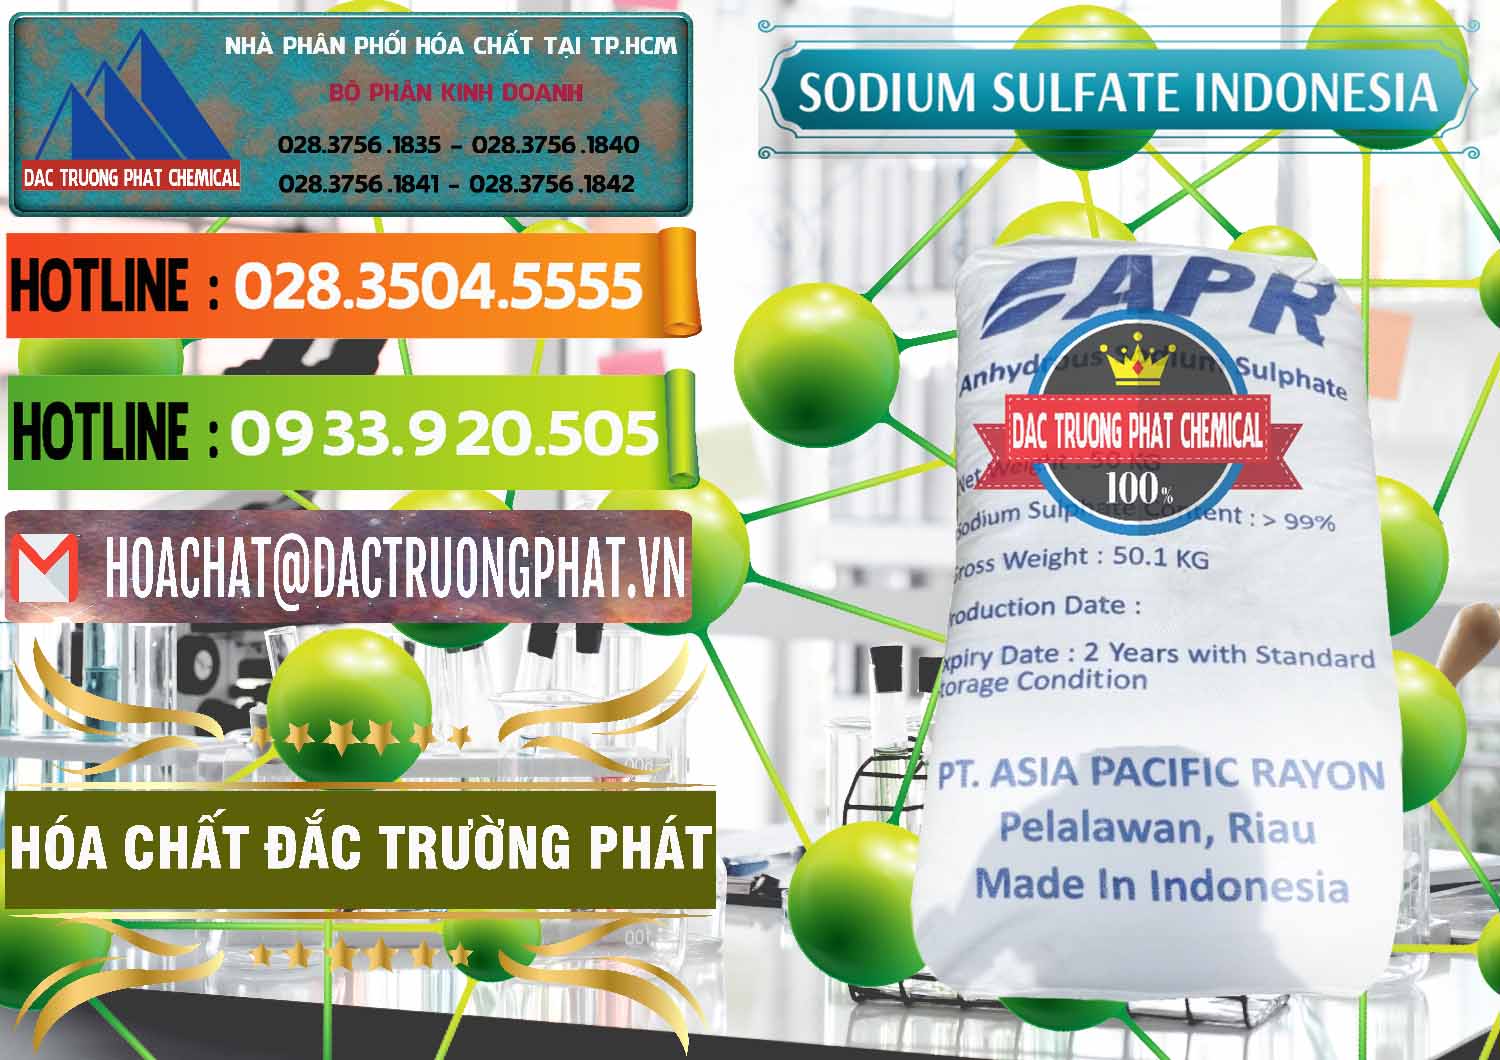 Cty bán & phân phối Sodium Sulphate - Muối Sunfat Na2SO4 APR Indonesia - 0460 - Cty cung cấp _ kinh doanh hóa chất tại TP.HCM - cungcaphoachat.com.vn